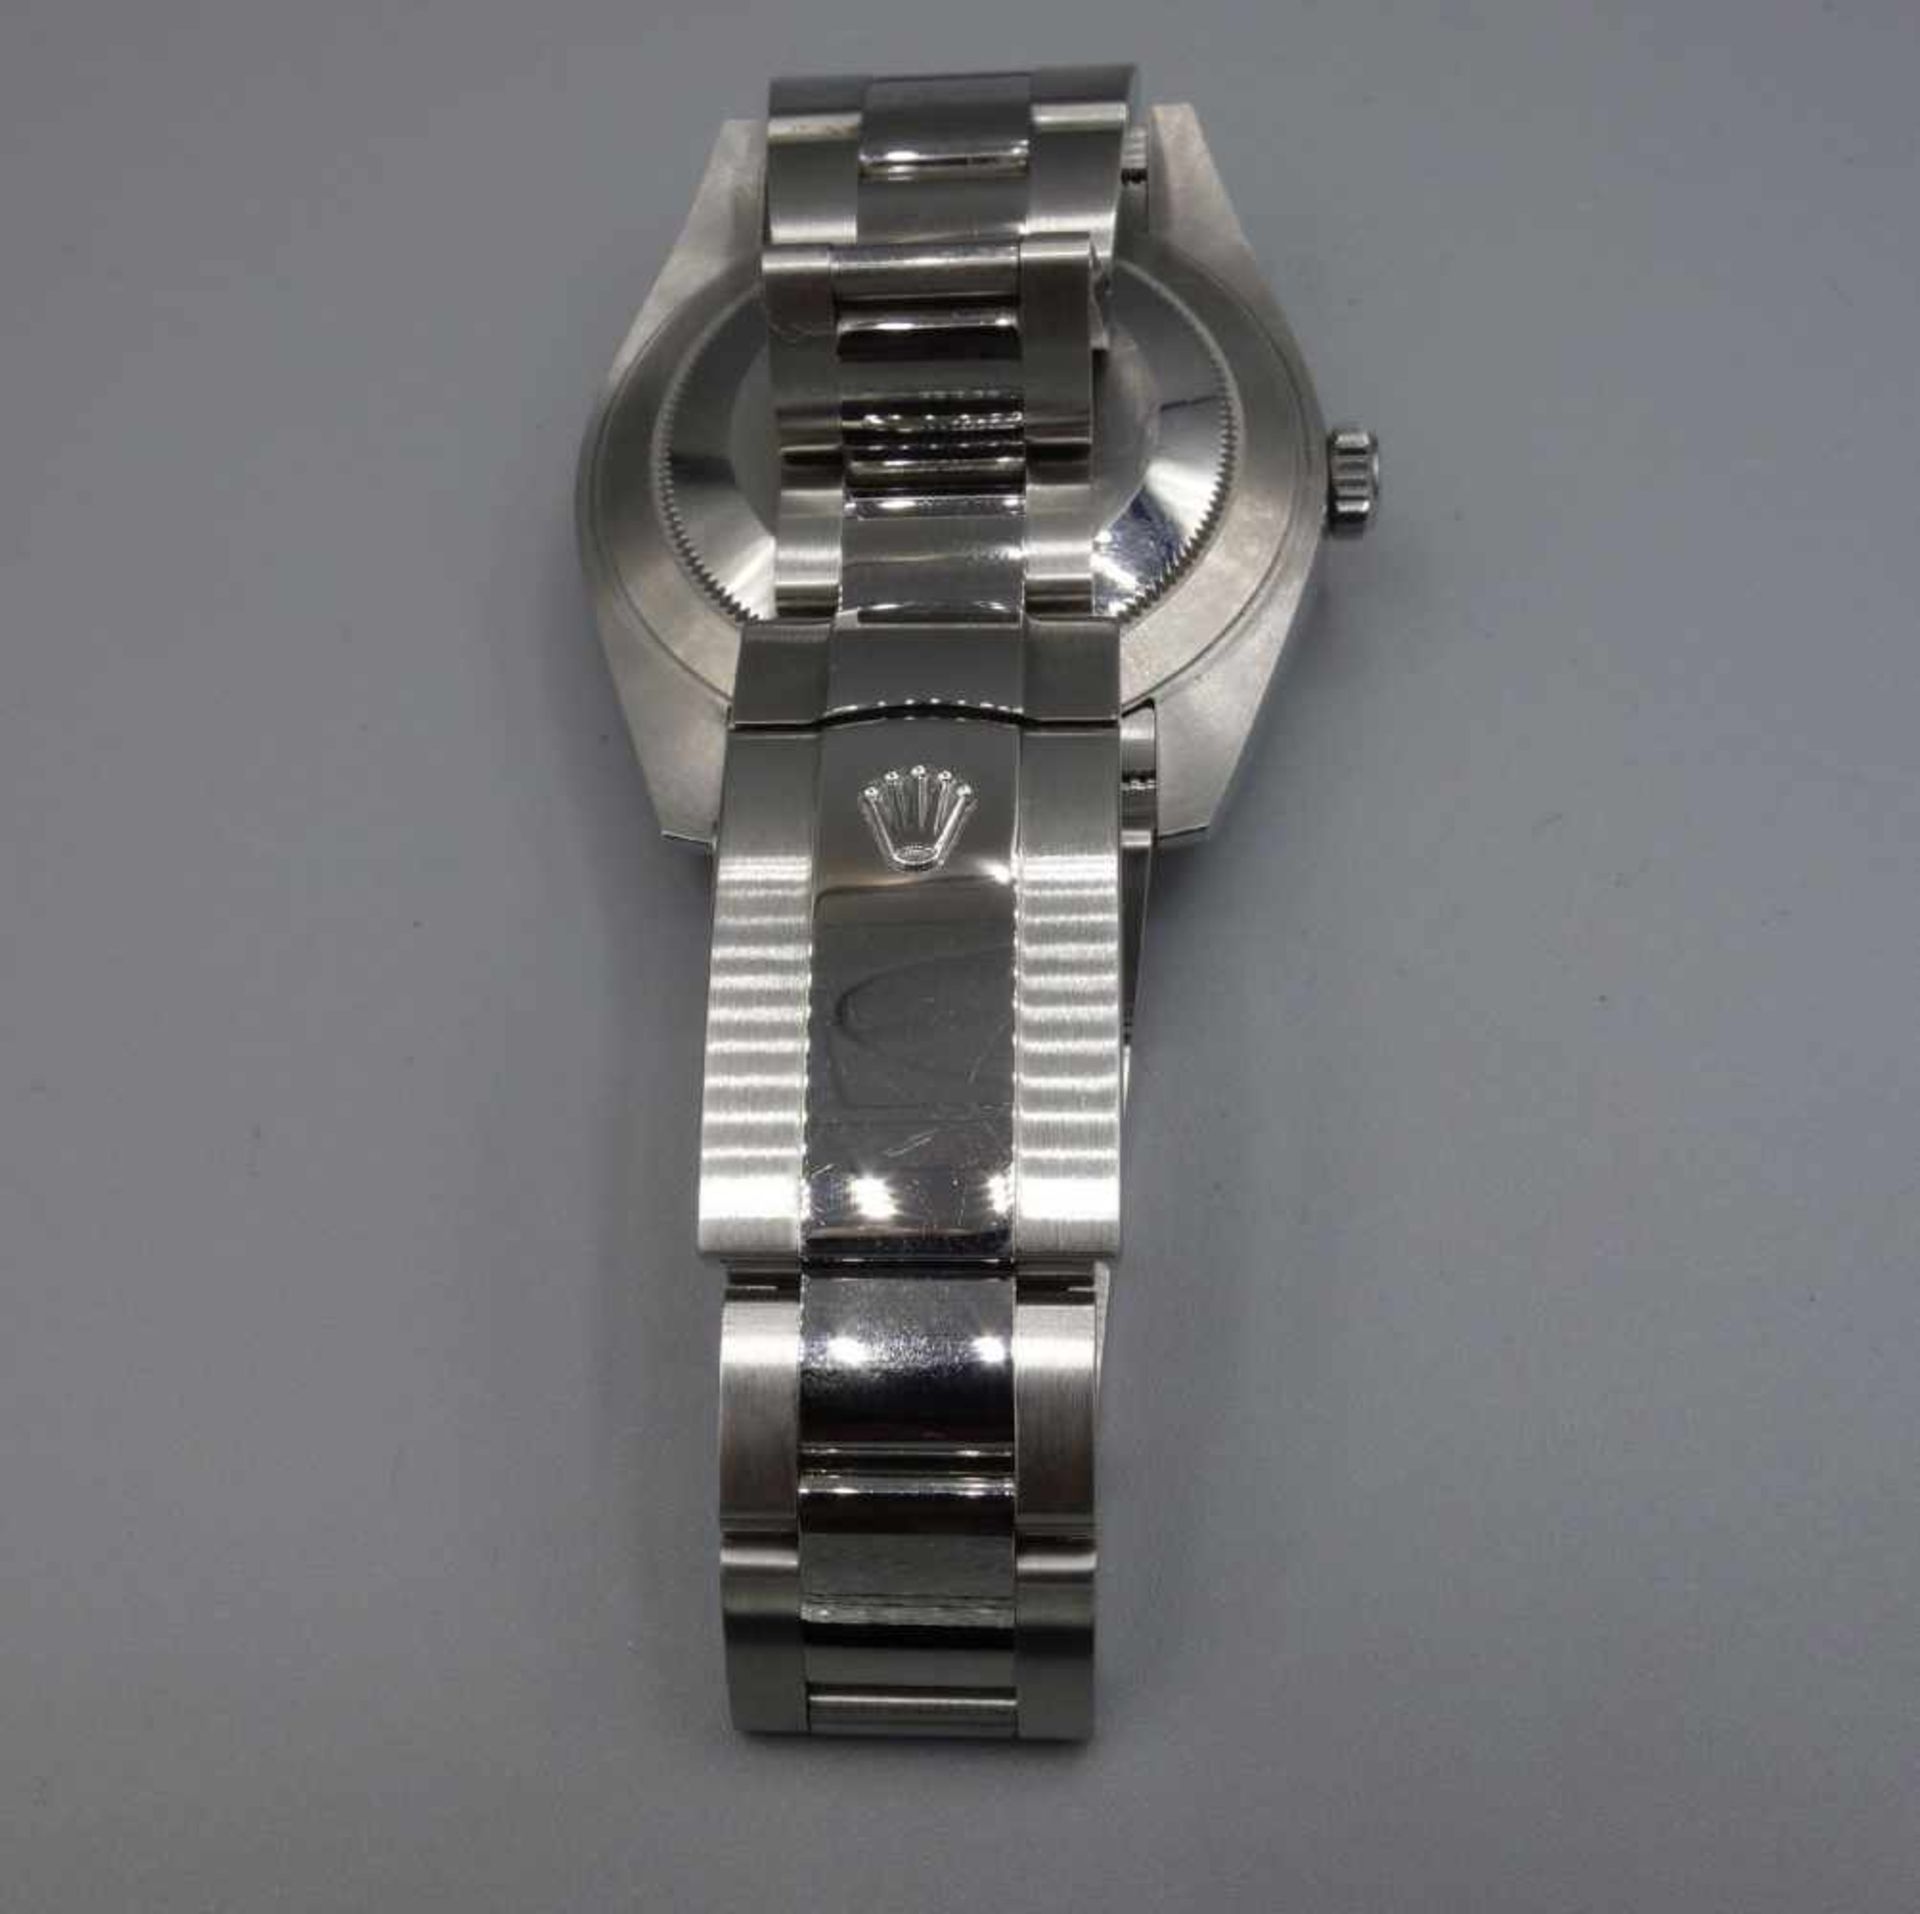 ARMBANDUHR - ROLEX OYSTER PERPETUAL DATEJUST / wristwatch, Rolex Watch Company / Schweiz, erworben - Bild 13 aus 15